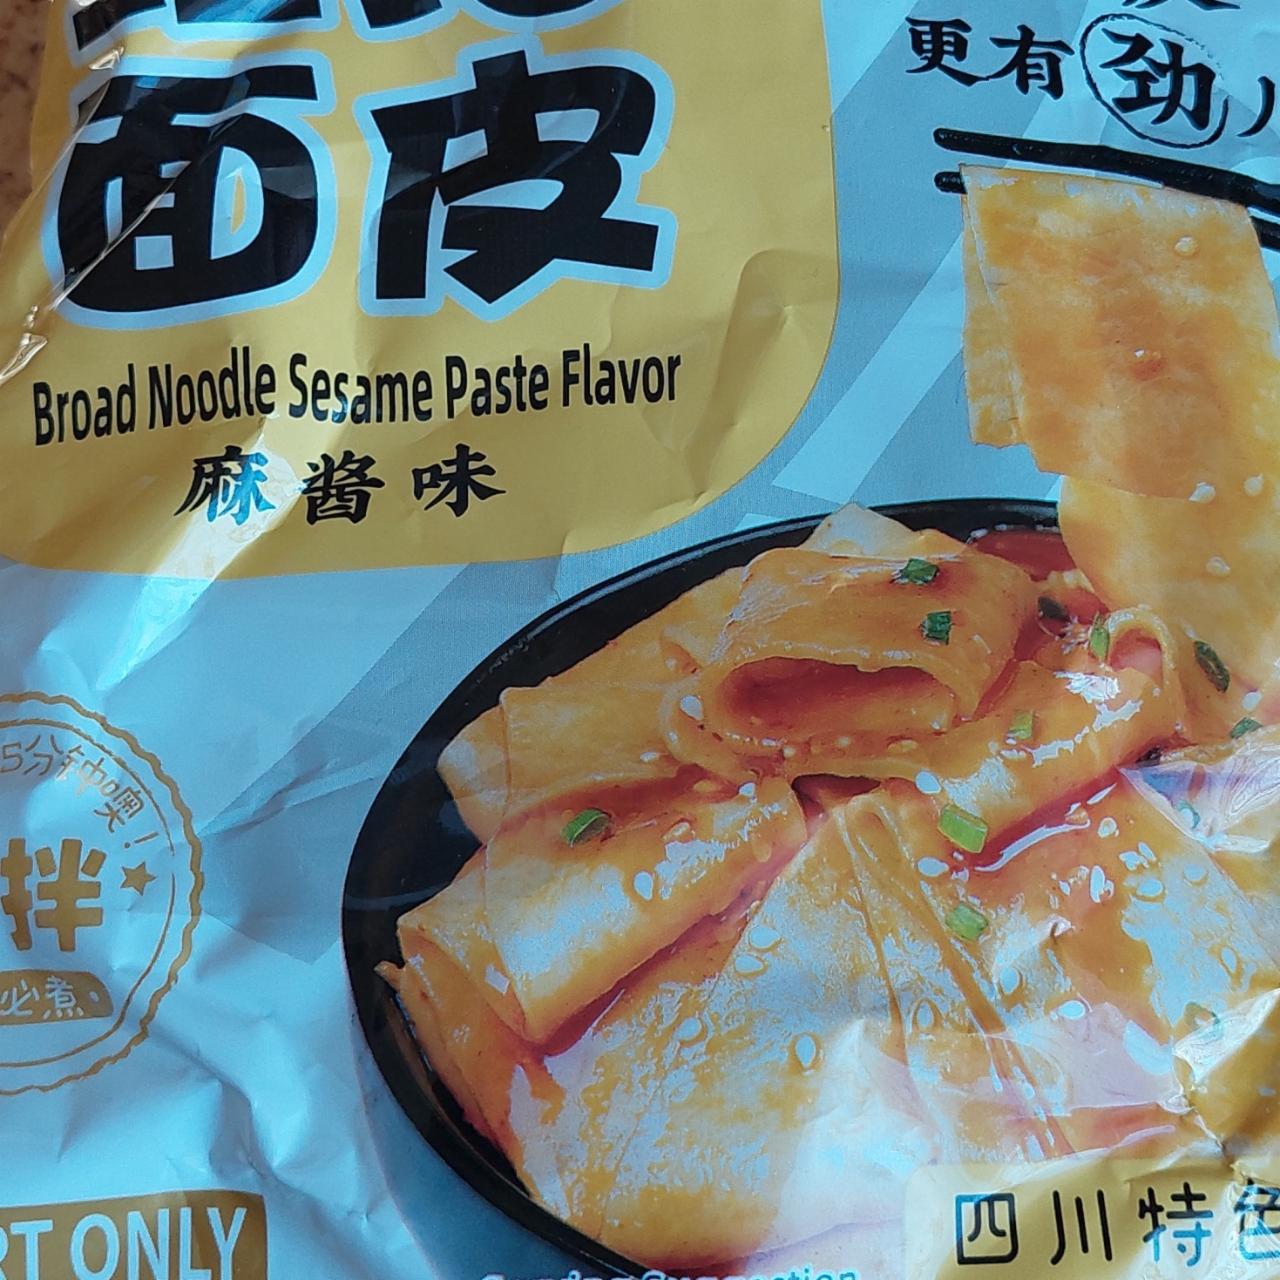 Fotografie - BaiJia Sichuan Broad Noodle Sesame Paste Flavour